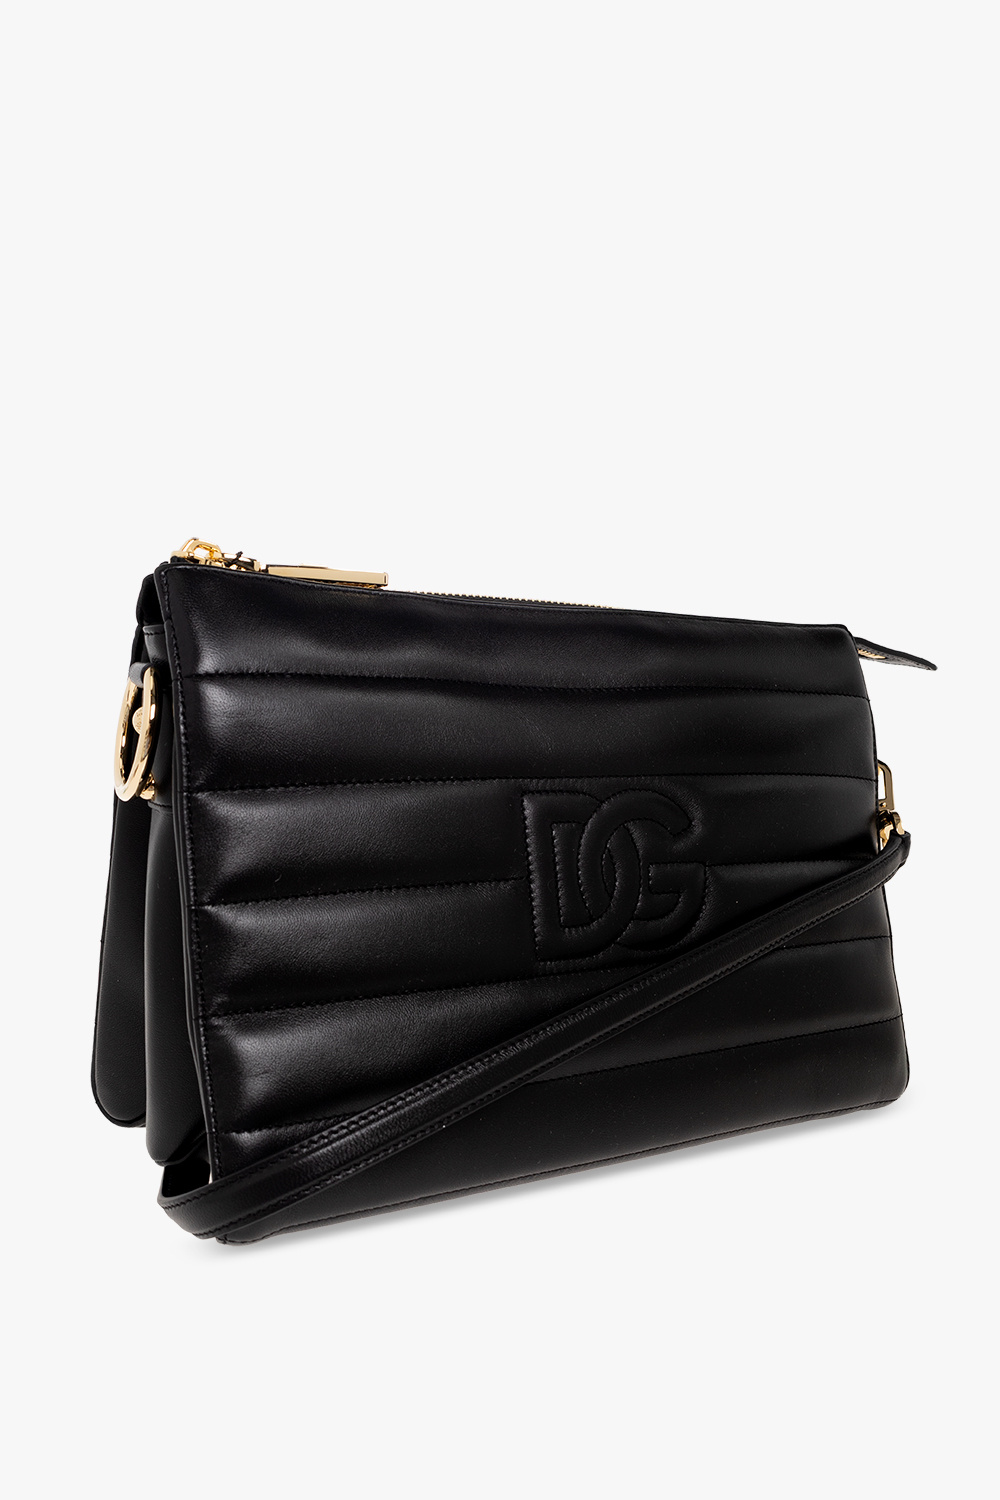 Dolce & Gabbana ‘Tris Medium’ shoulder bag